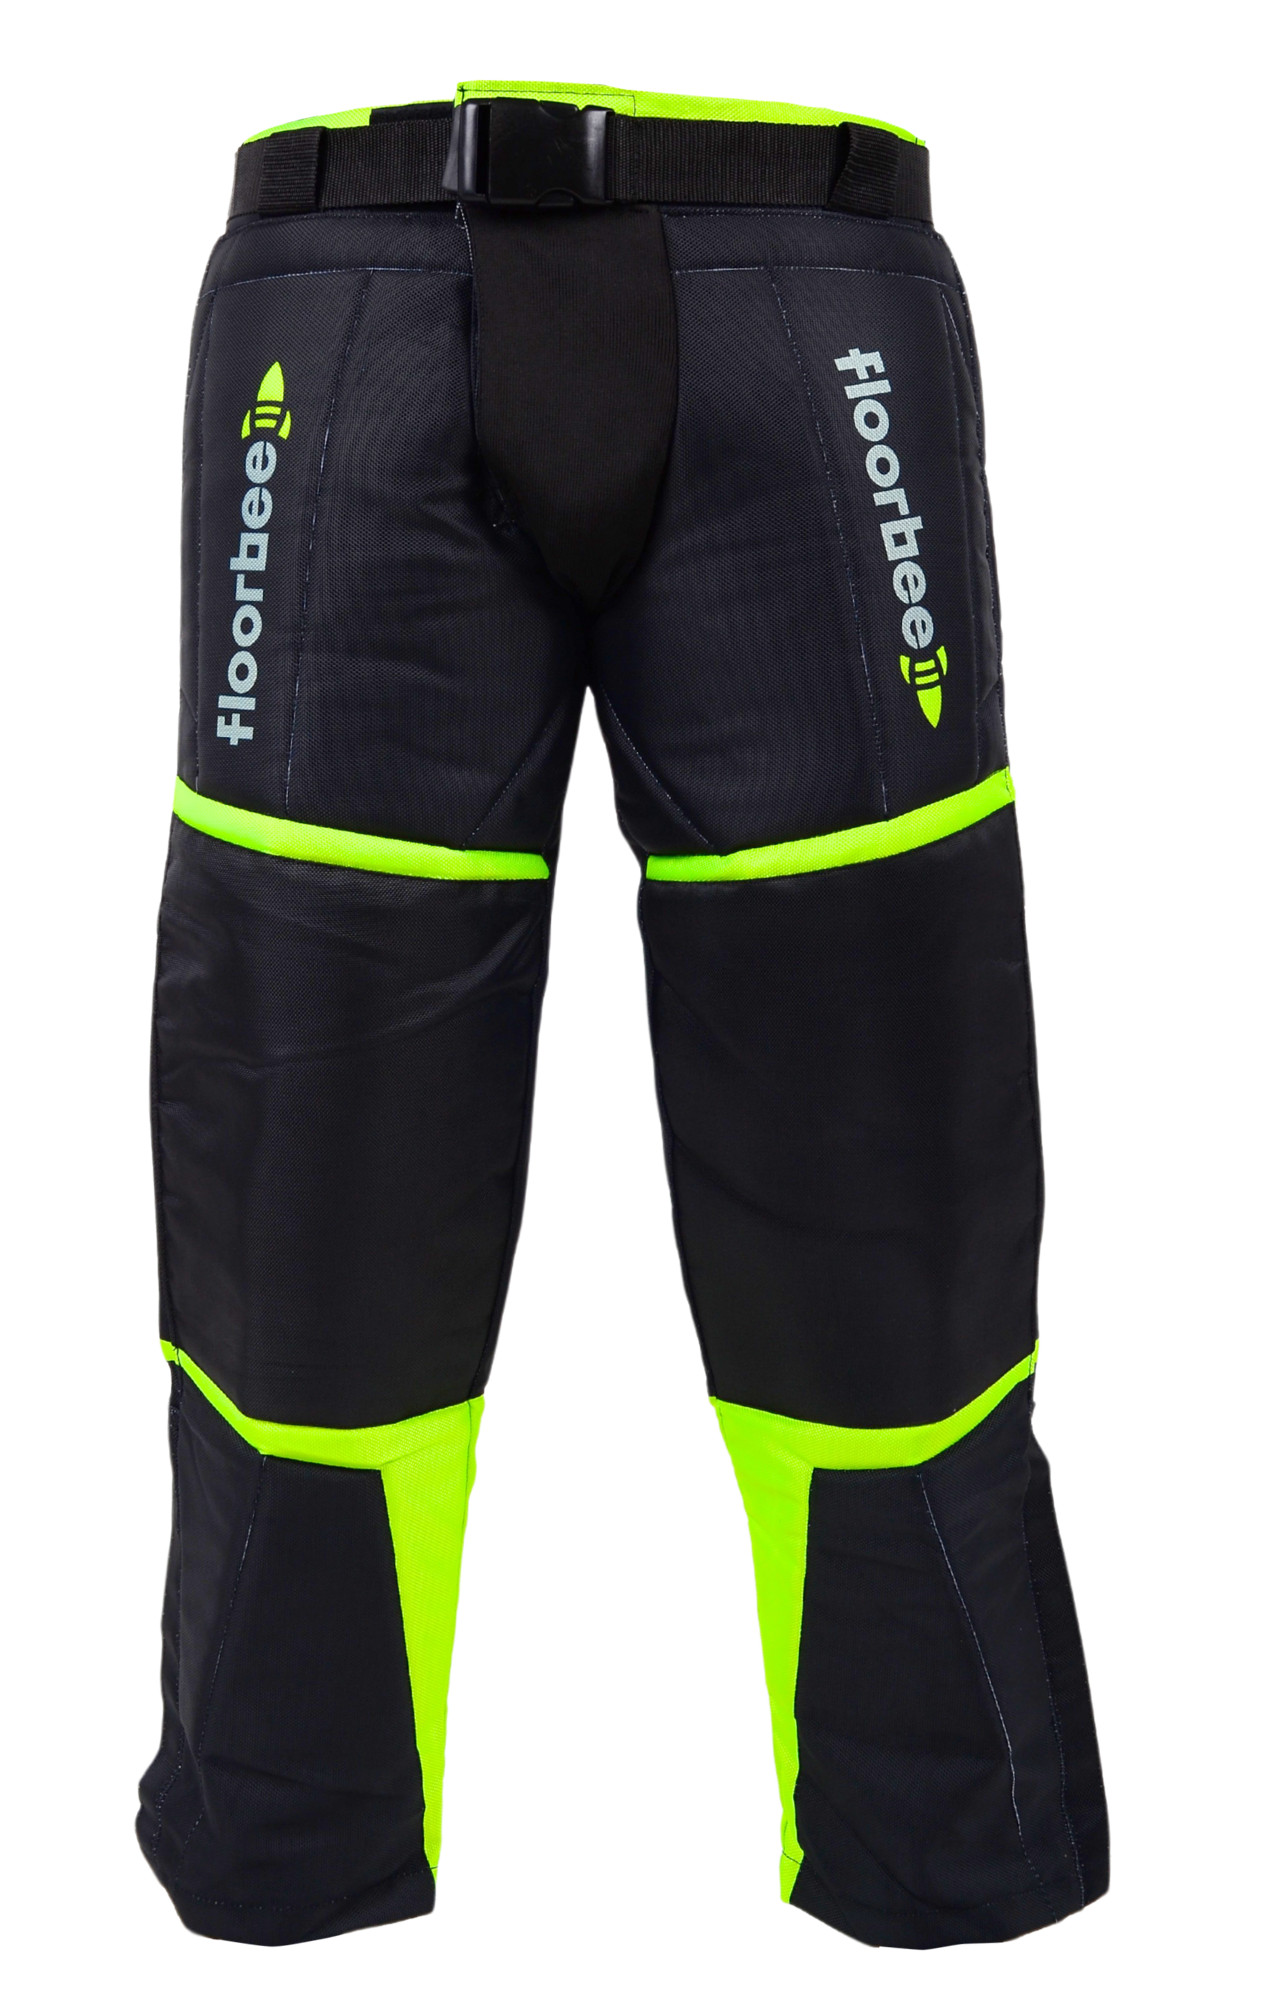 FLOORBEE Goalie Armor Pants 3.0 M, černá / žlutá